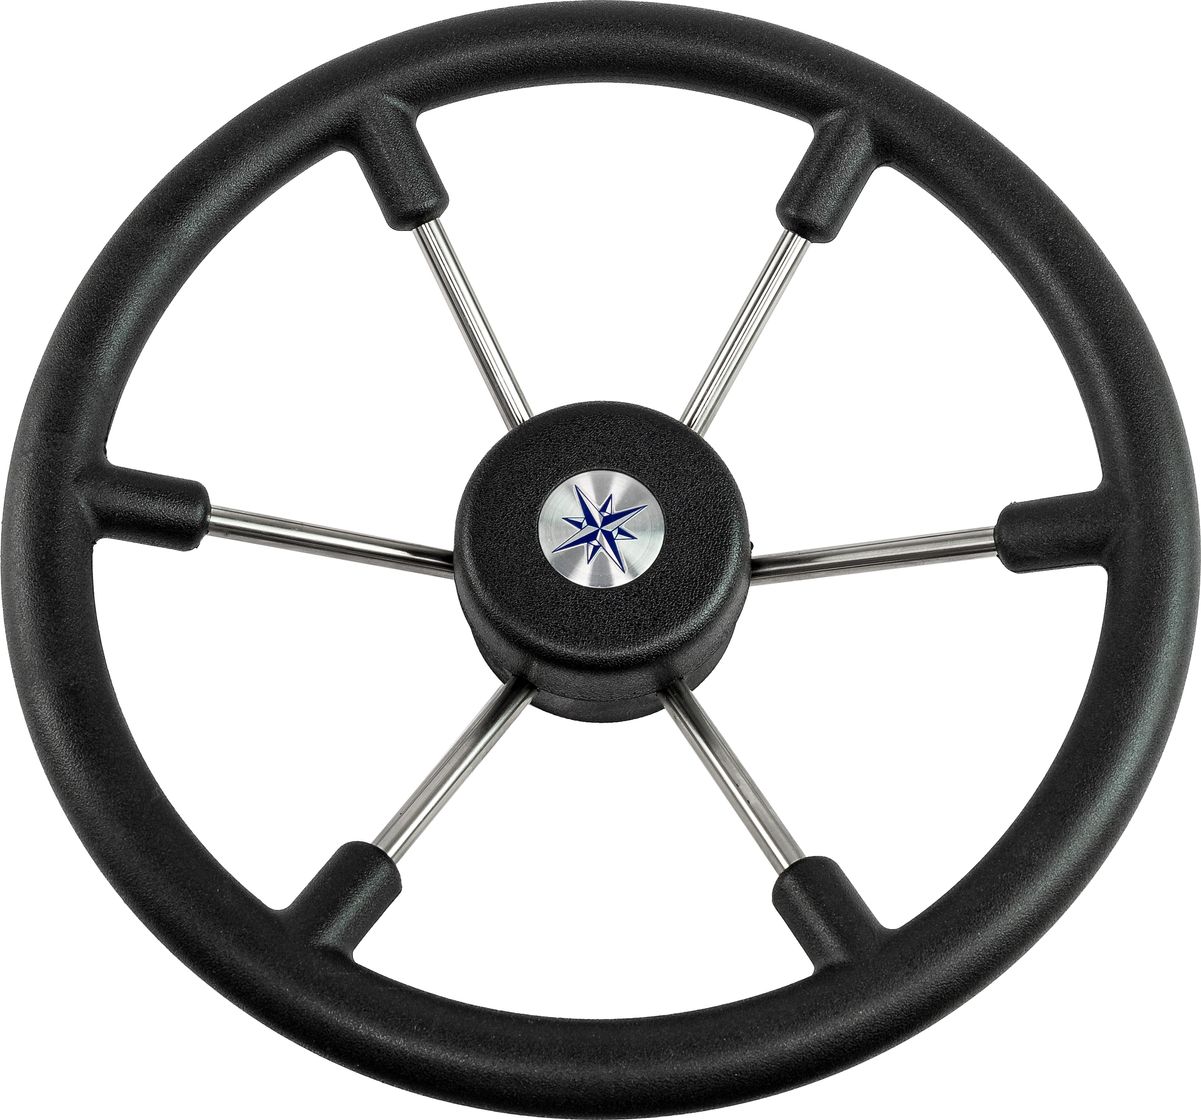 Рулевое колесо LEADER TANEGUM черный обод серебряные спицы д. 360 мм VN7360-01 рулевое колесо leader wood деревянный обод серебряные спицы д 360 мм vn7360 33